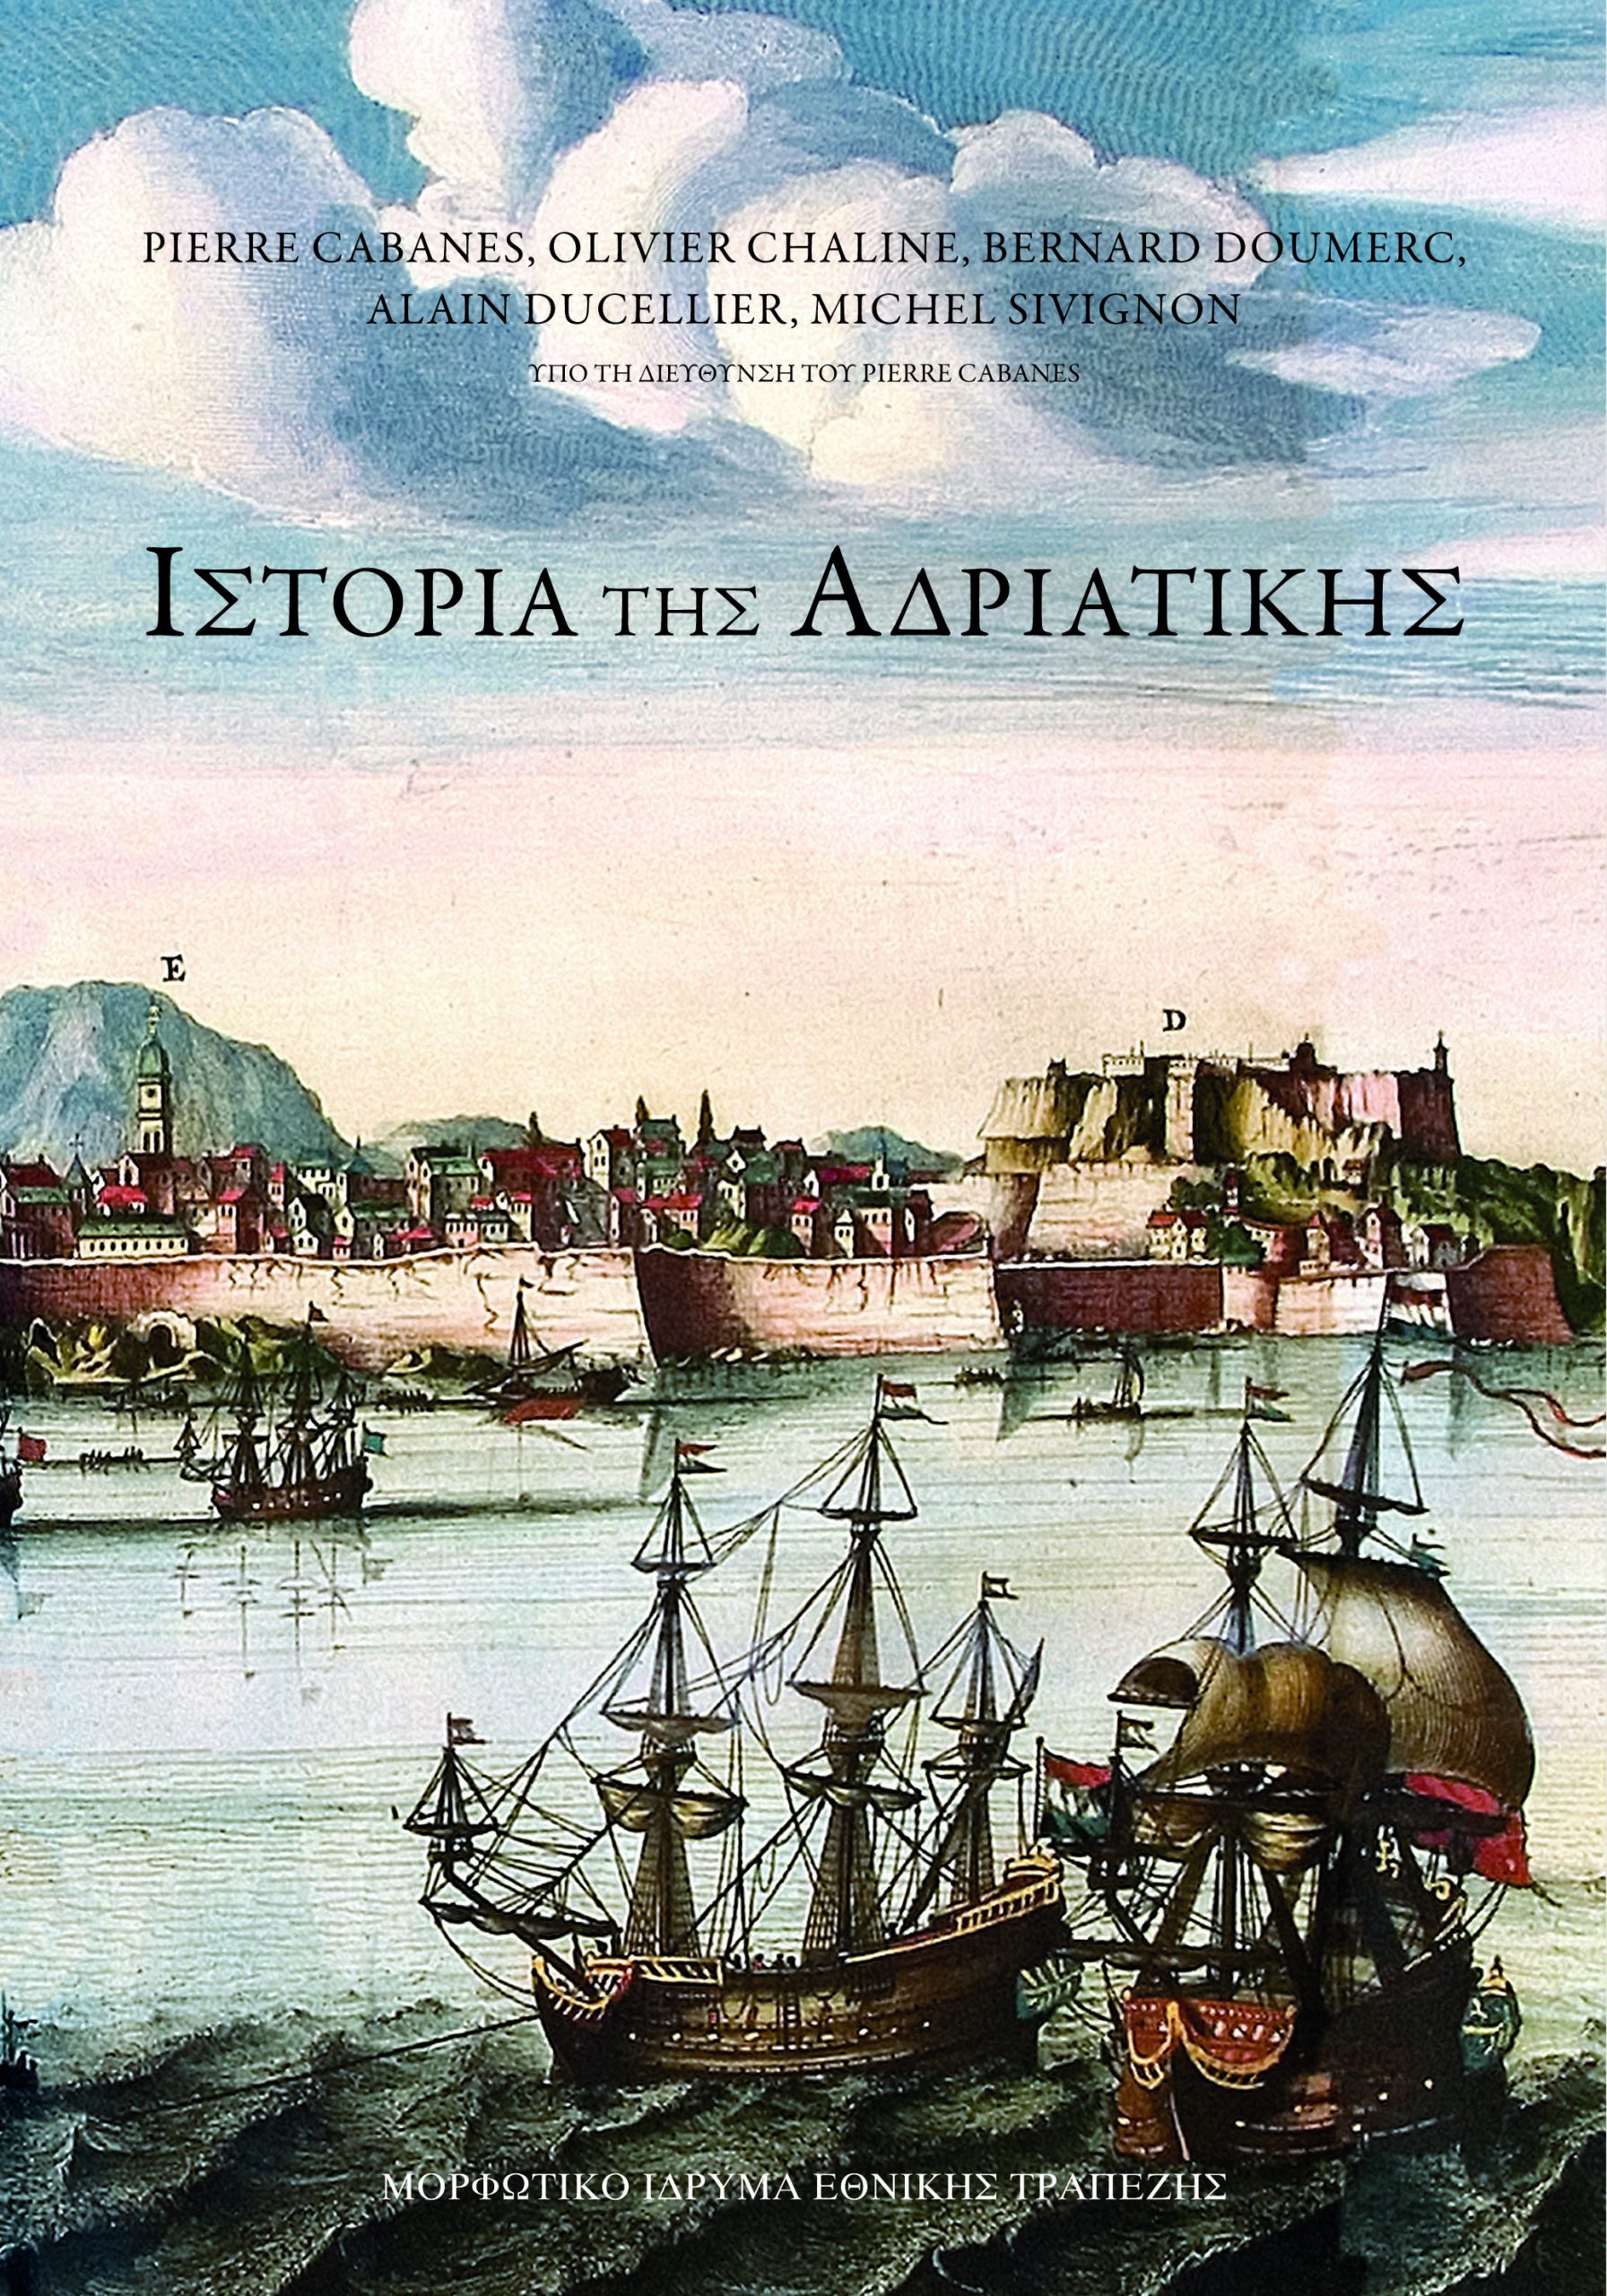 istoria-tis-adriatikis